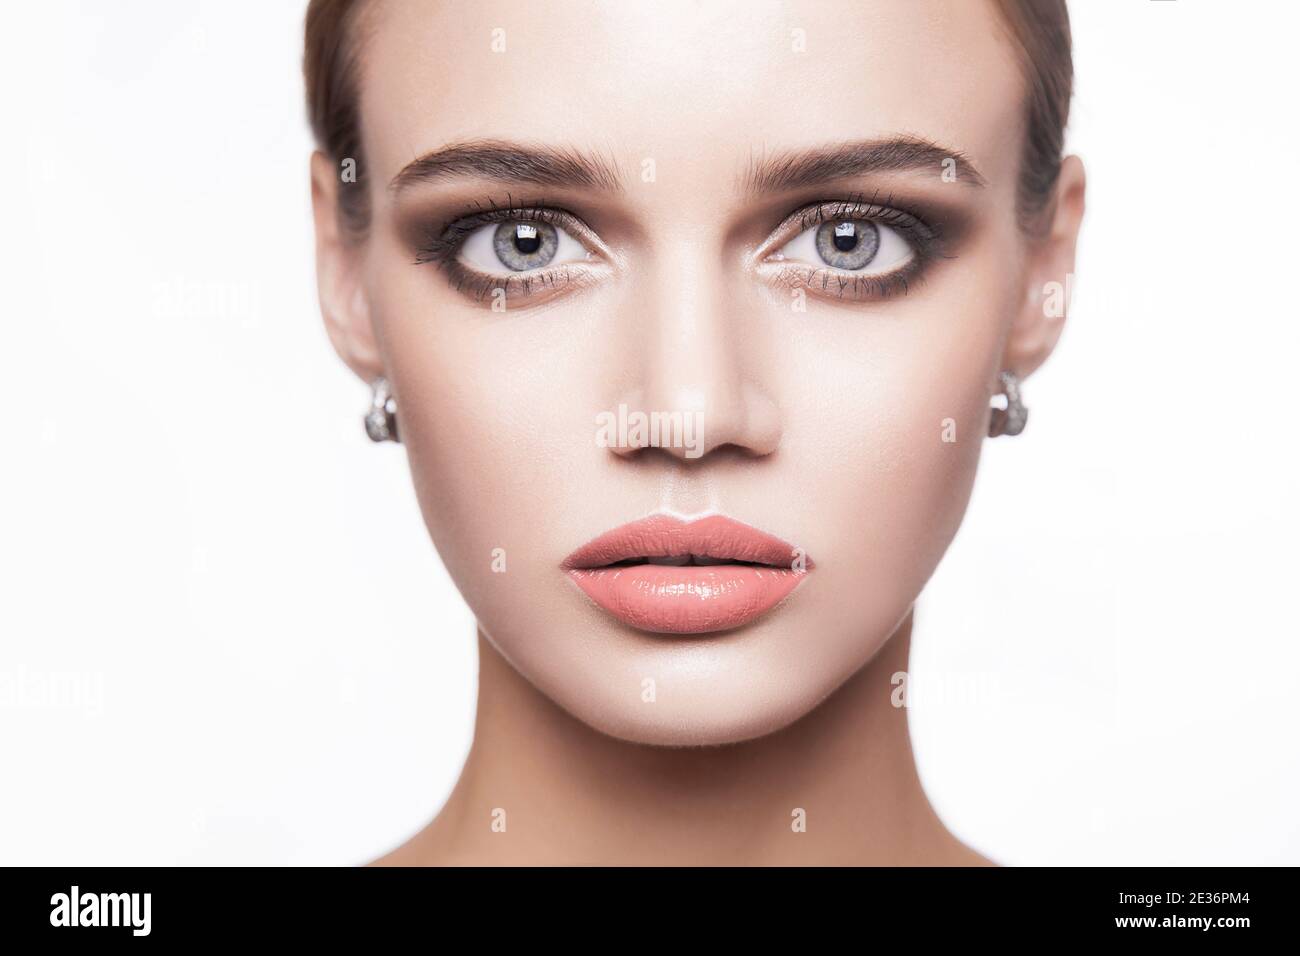 Portrait von schönen jungen Brünette Frau mit rauchigen Augen Make-up und natürliche Lippen Blick auf die Kamera. Schönheit, Make-up Gesundheit und Hautpflege-Konzept. ind Stockfoto